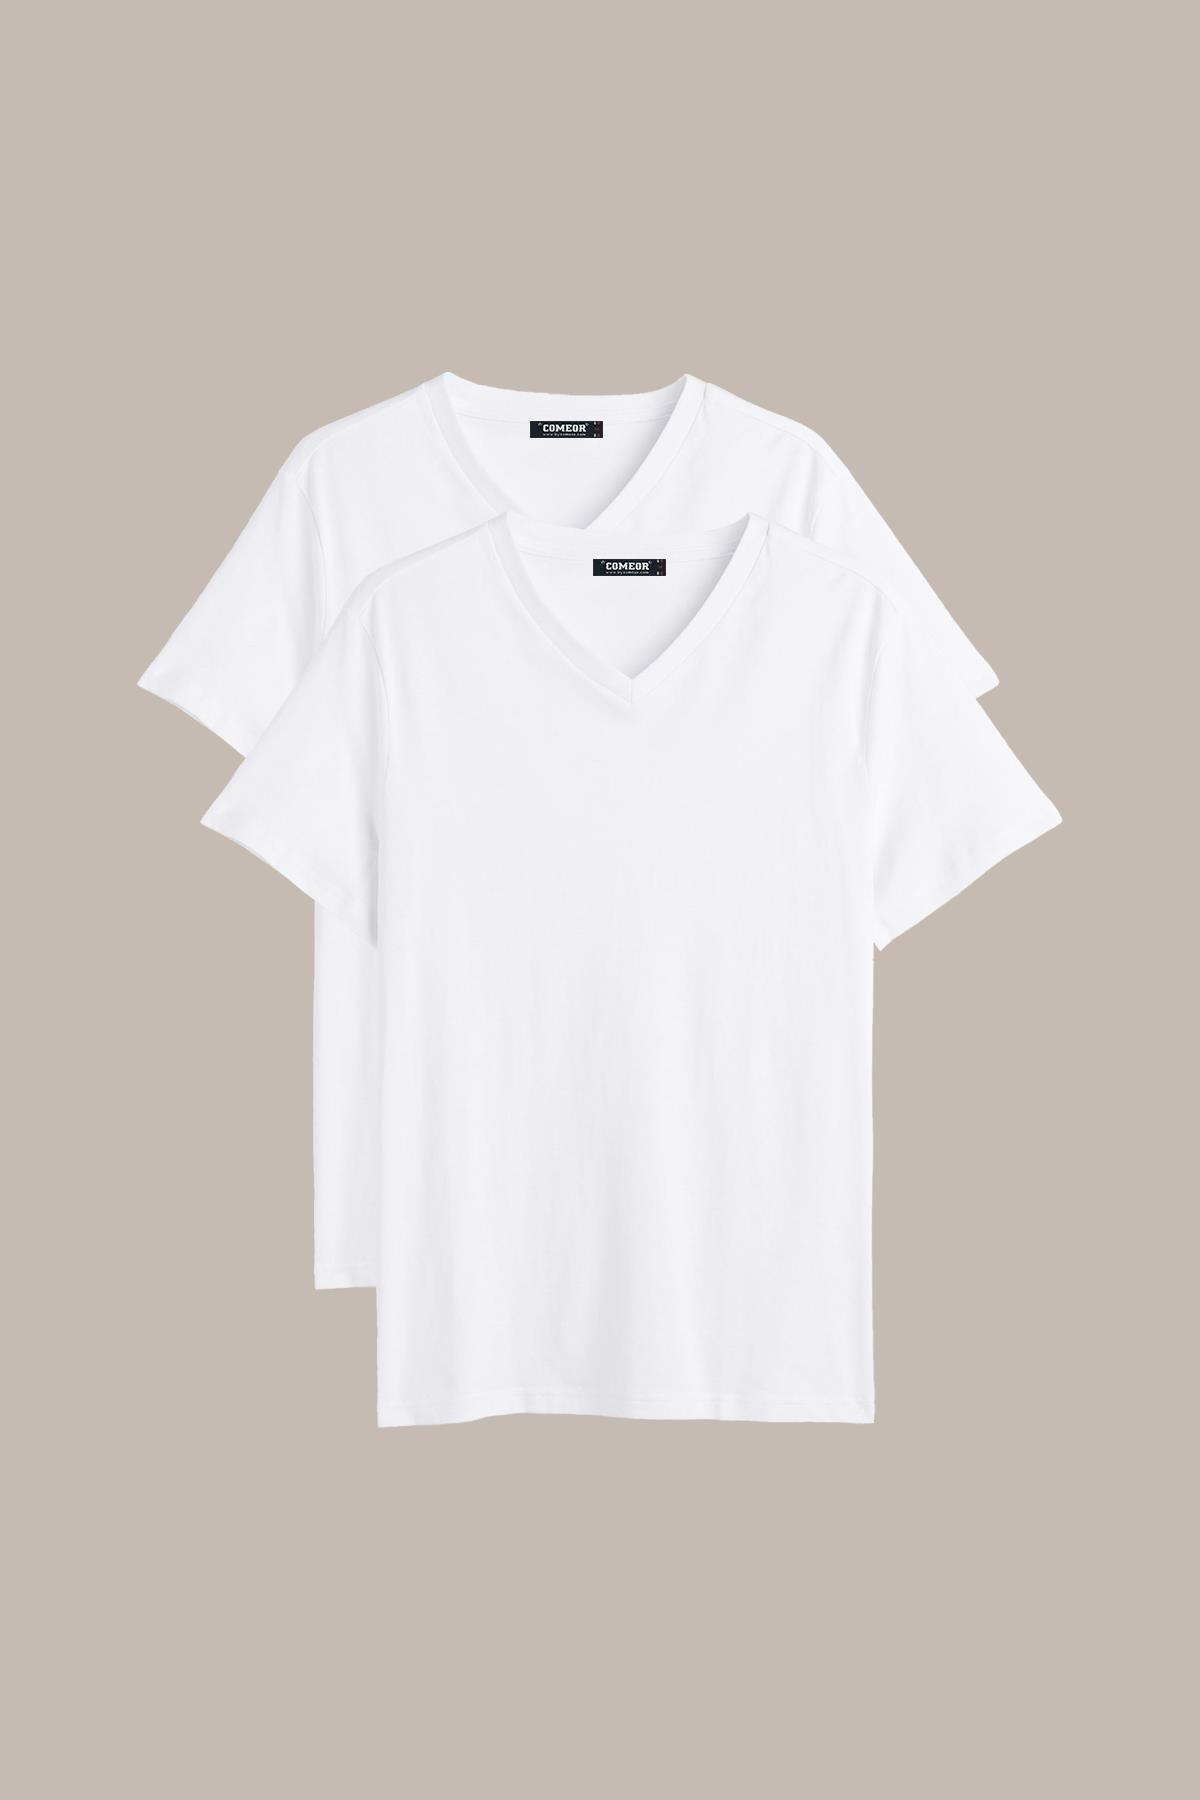 COMEOR Erkek Siyah-Beyaz T- Shirt Regular Fit Rahat Kesim V Yaka 2'li Basic  Tişört